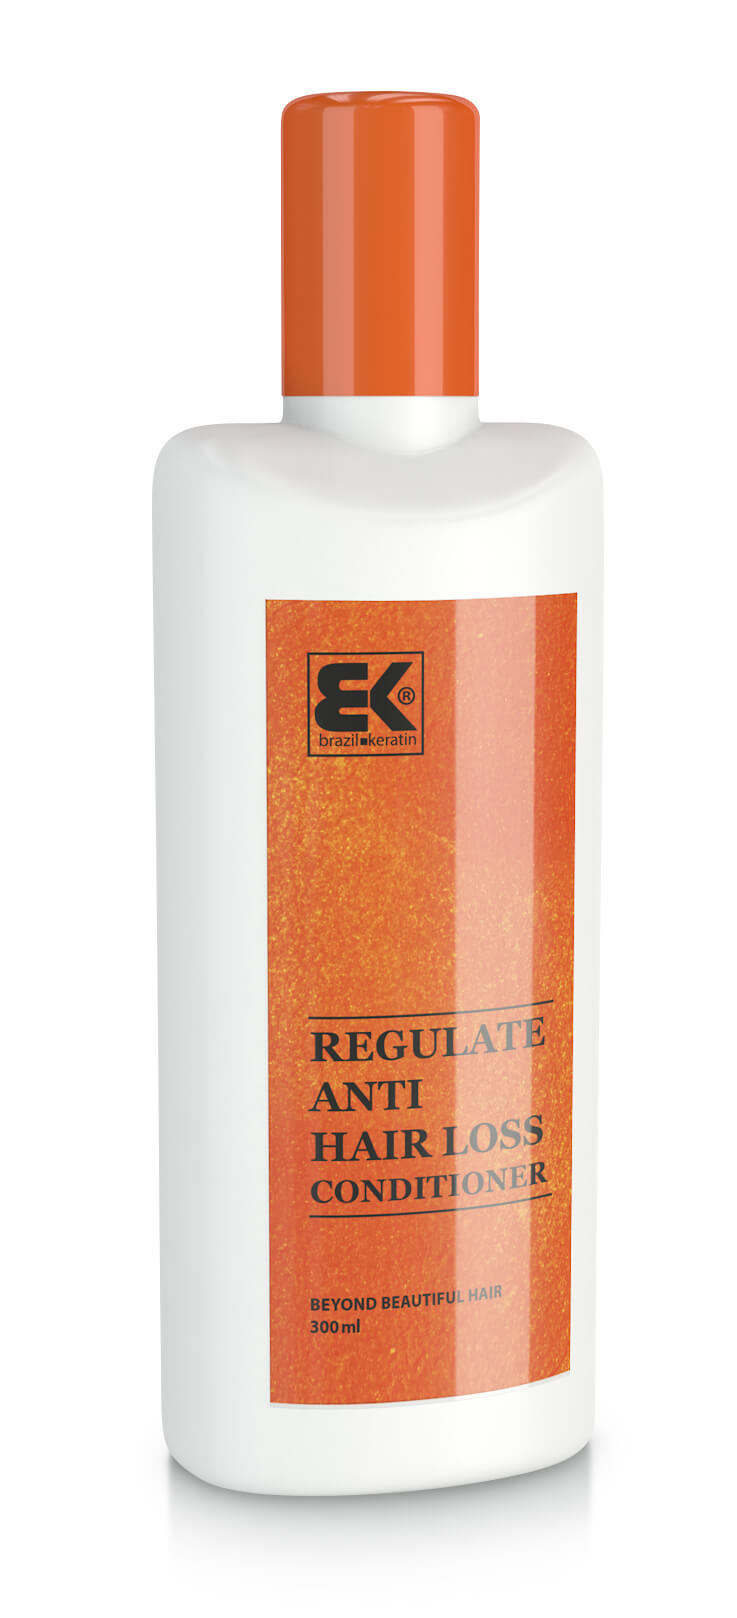 Brazil Keratin Kondicionér s keratinem proti vypadávání vlasů (Regulate Anti Hair Loss Conditioner) 300 ml